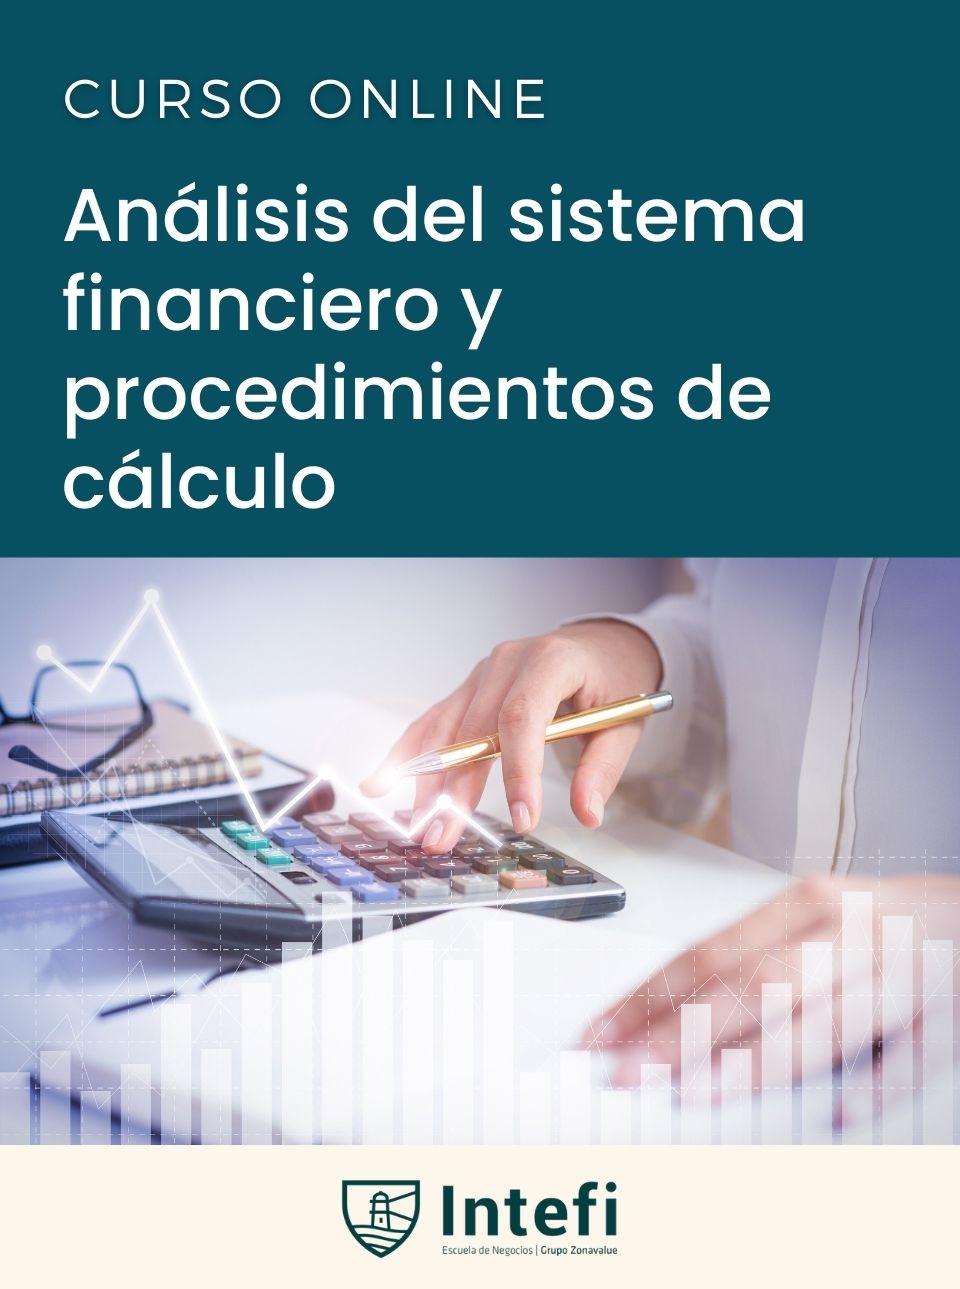 Curso de análisis del sistema financiero y procedimientos de cálculo Intefi